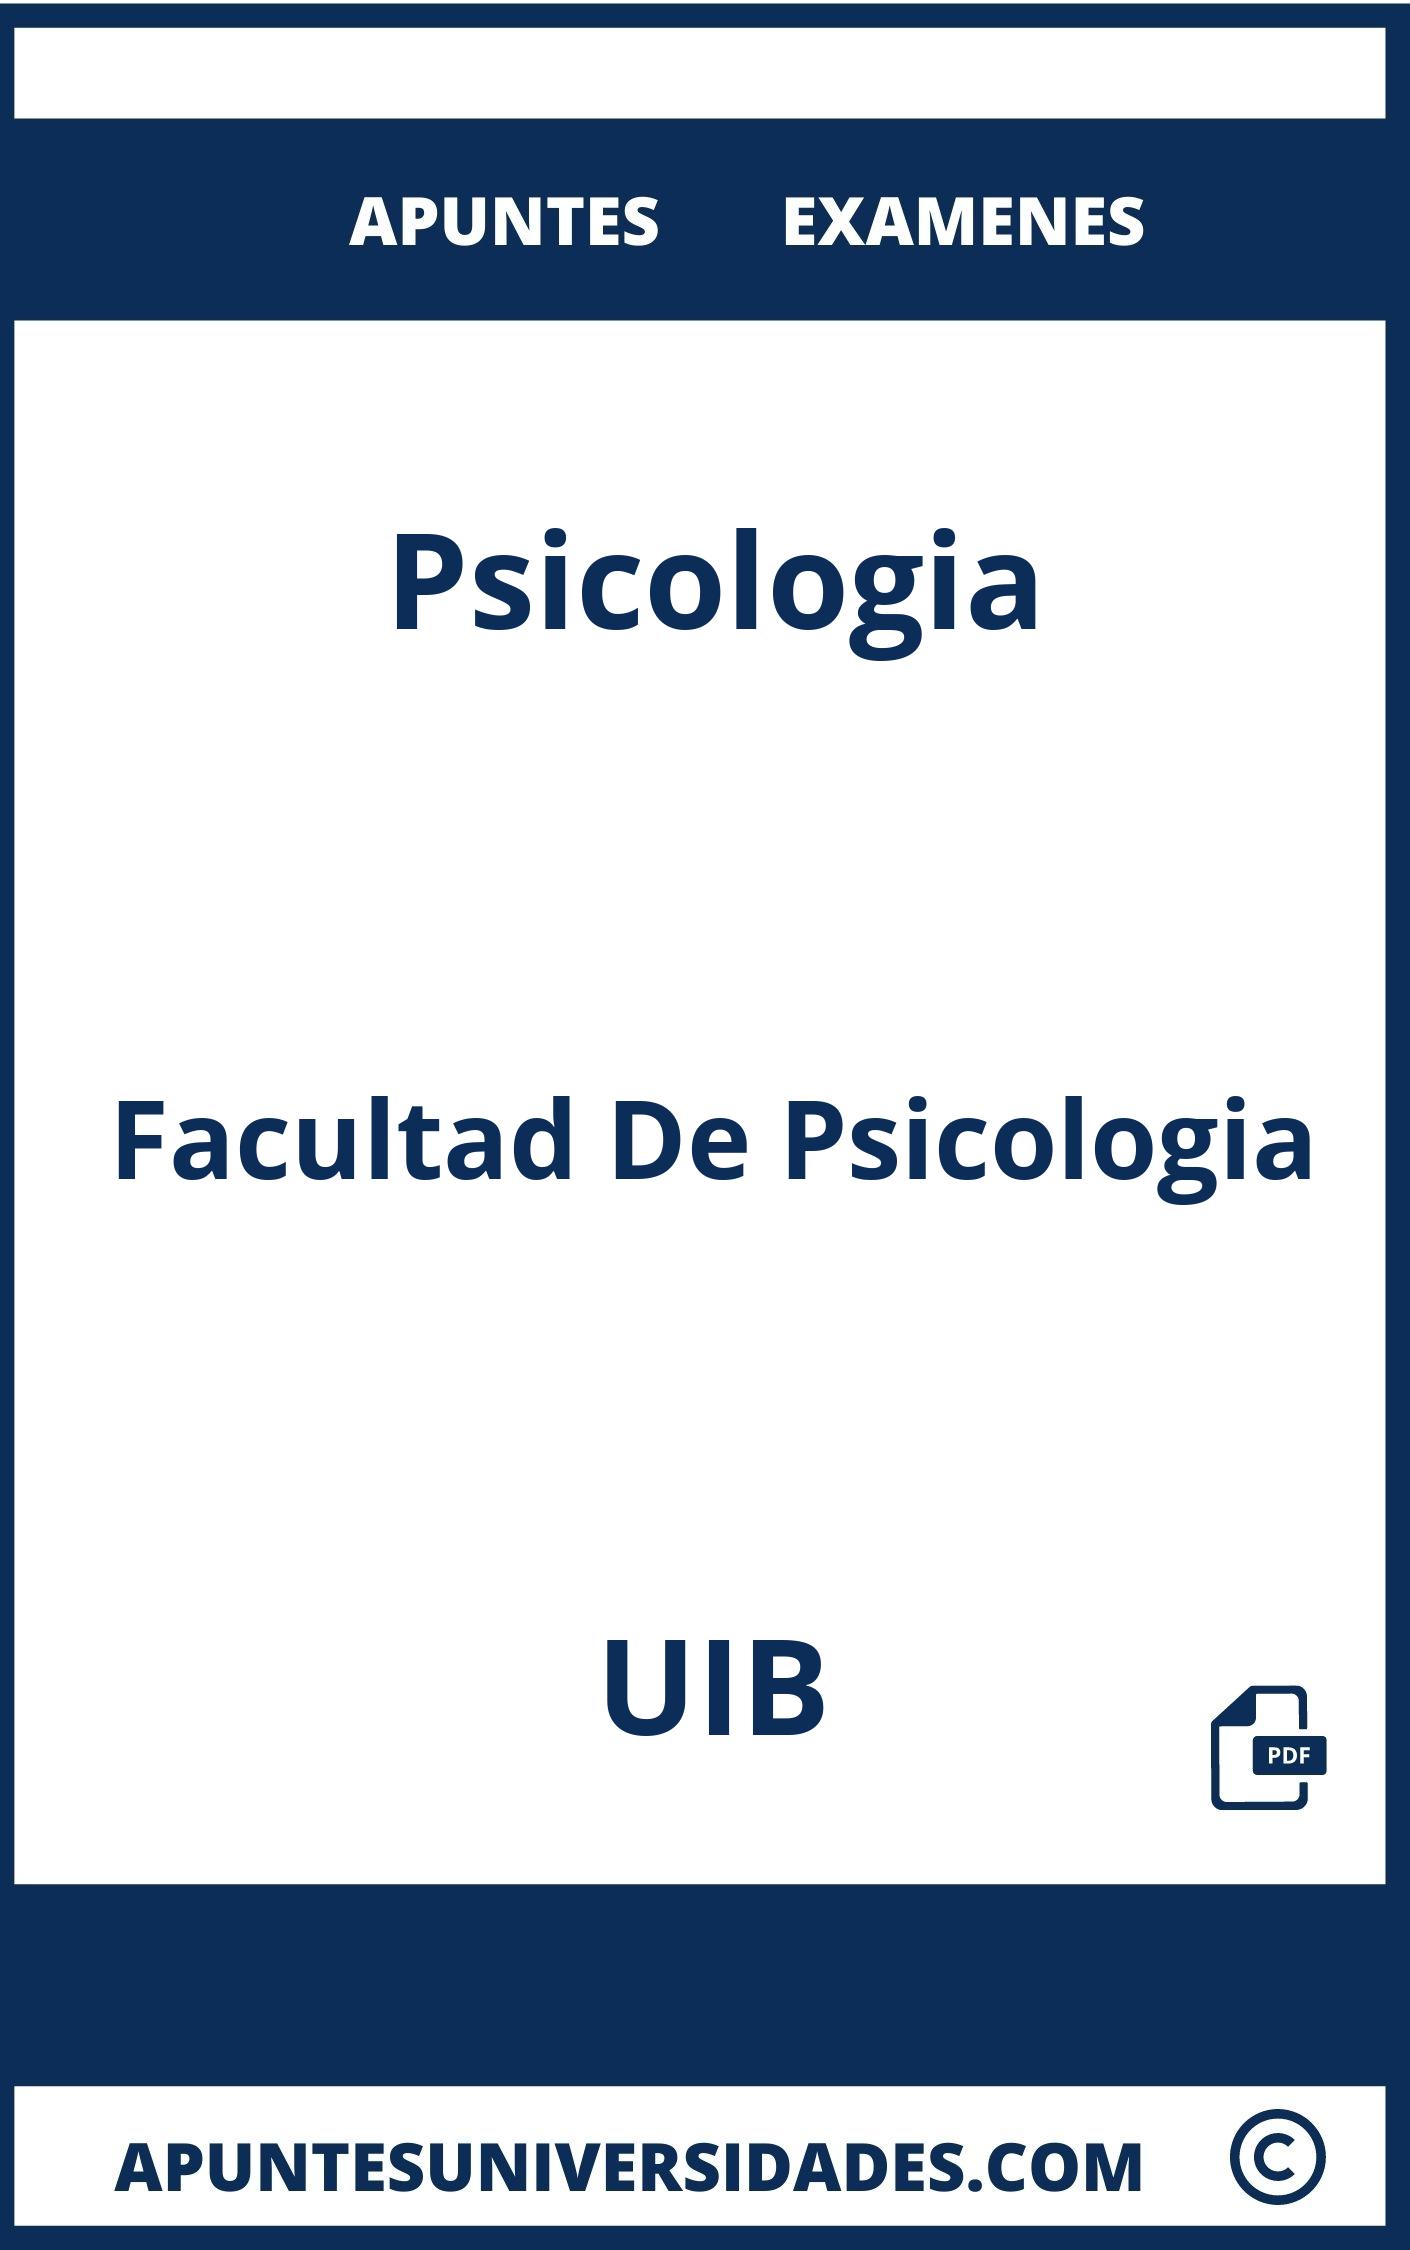 Examenes y Apuntes Psicologia UIB